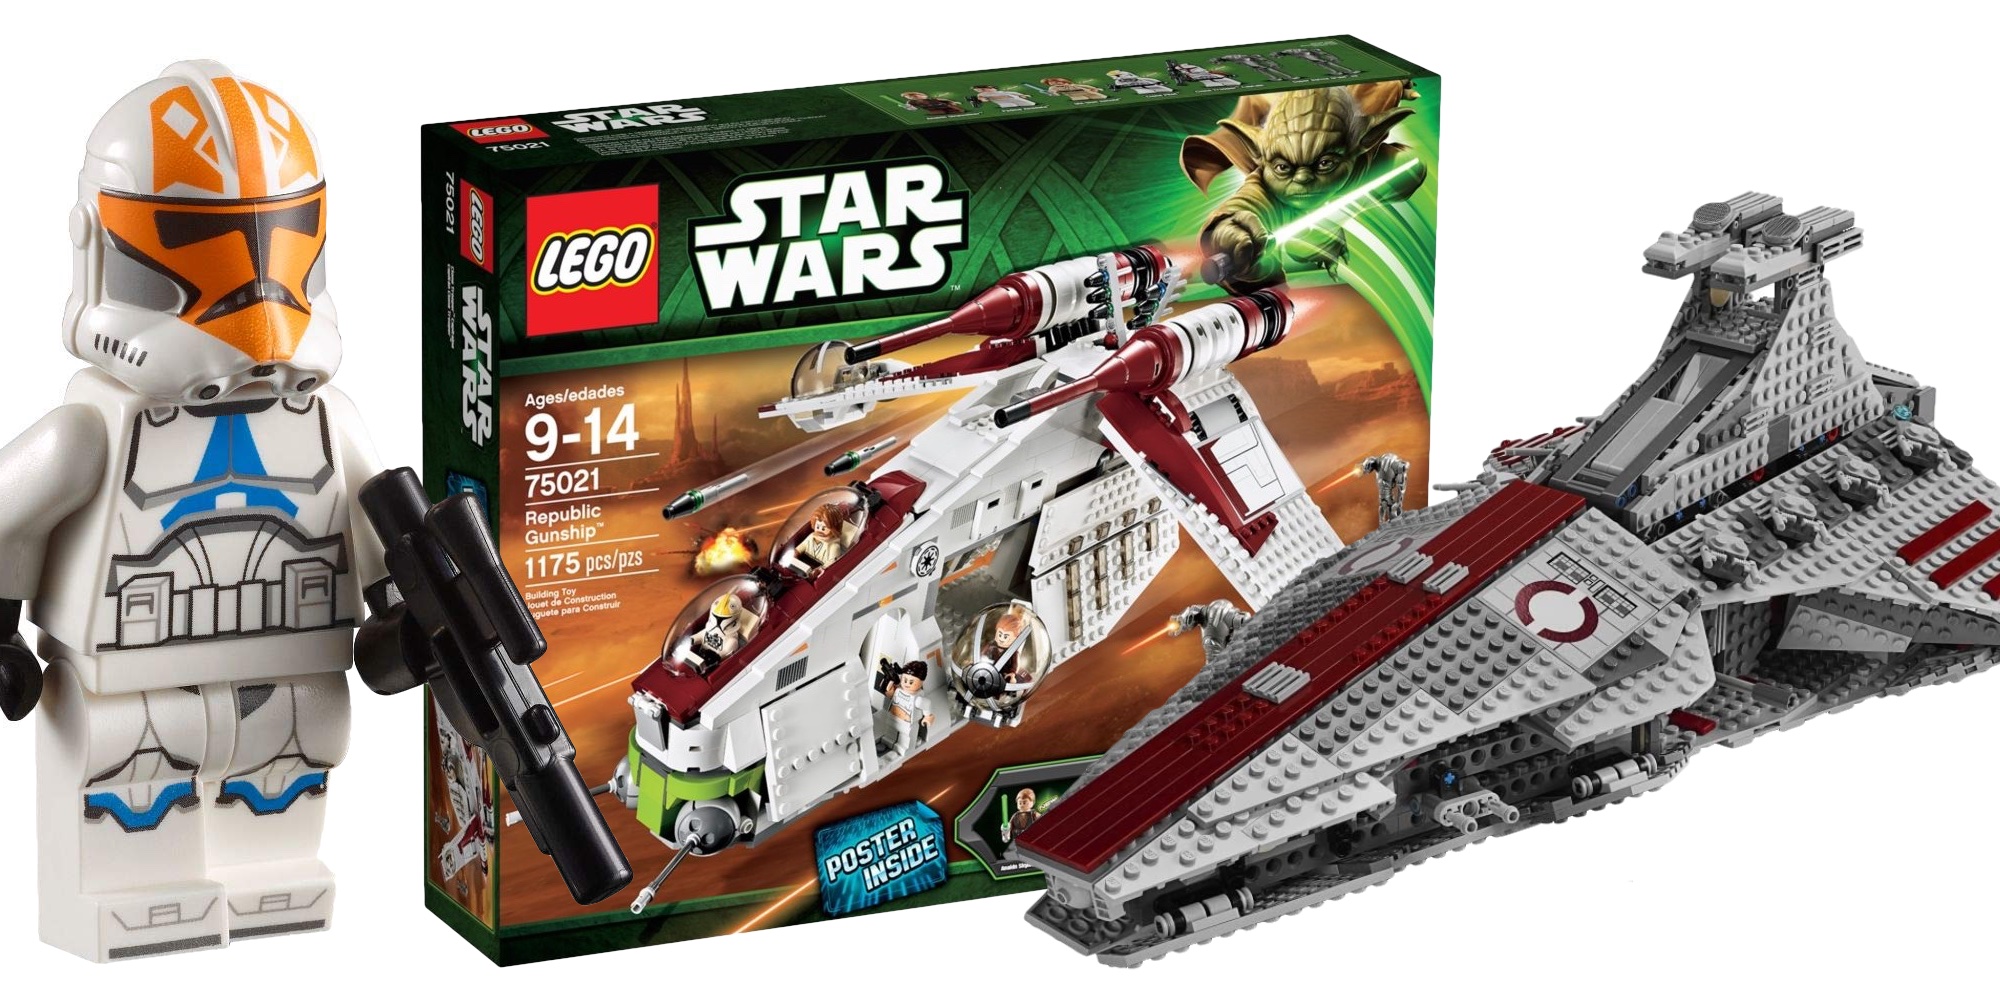 LEGO Star Wars summer sets for 2023: Venator and more